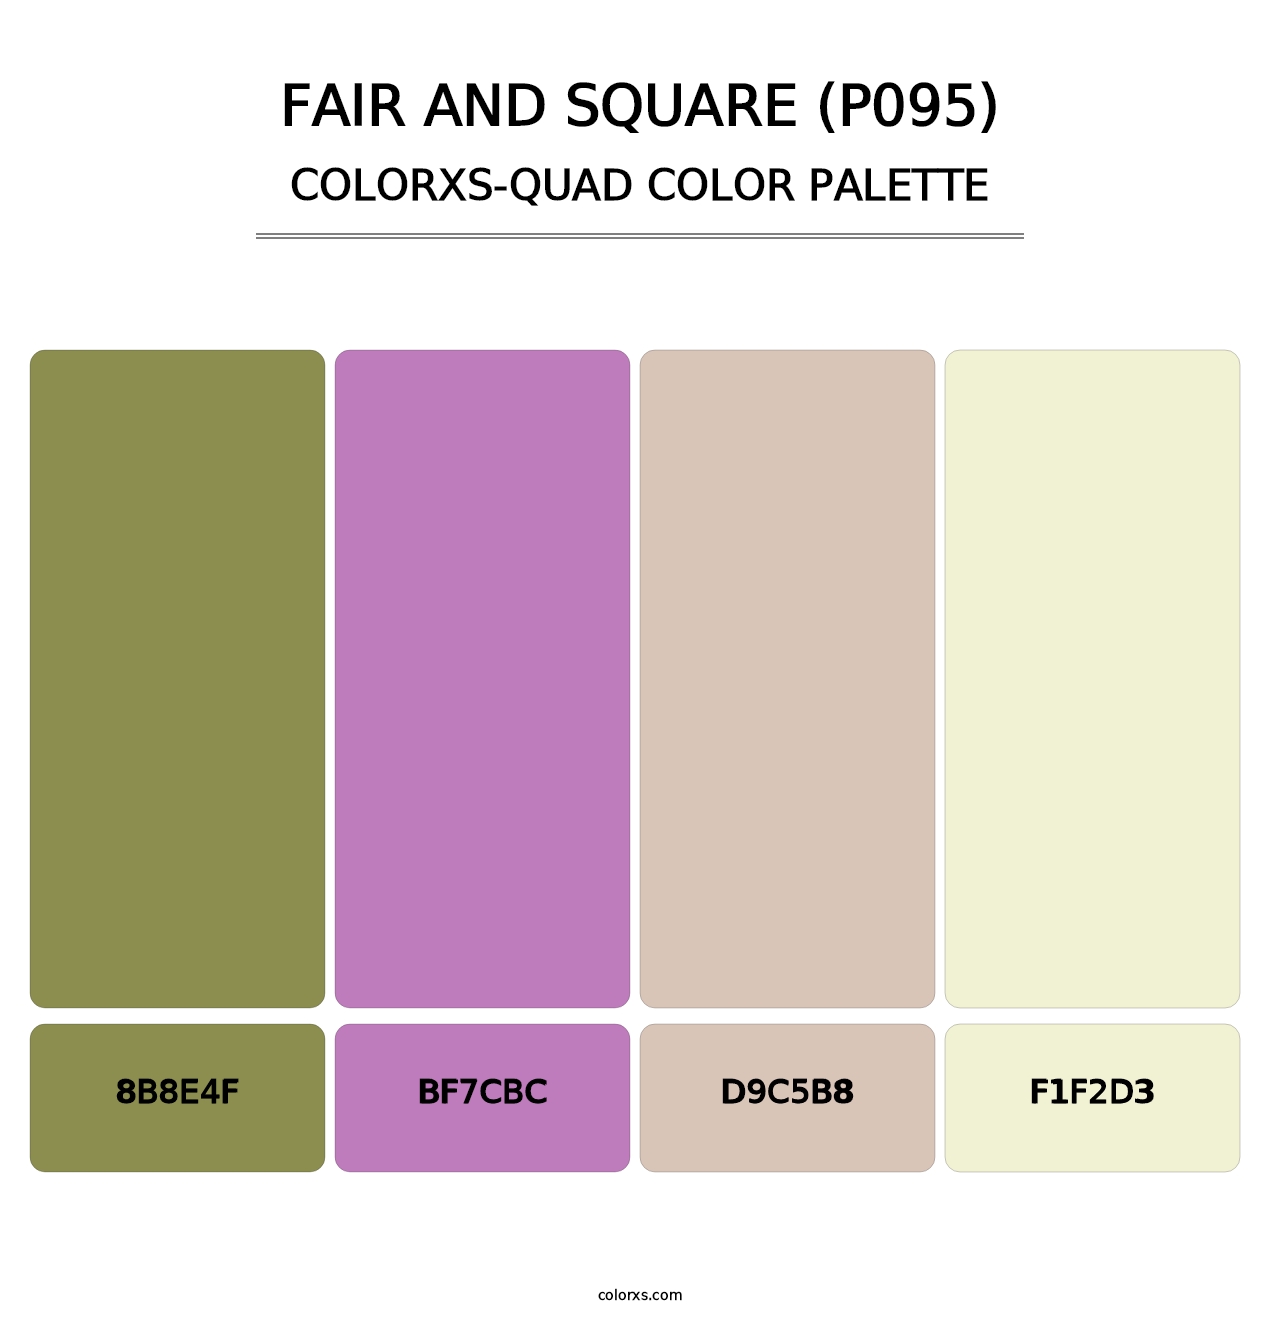 Fair and Square (P095) - Colorxs Quad Palette